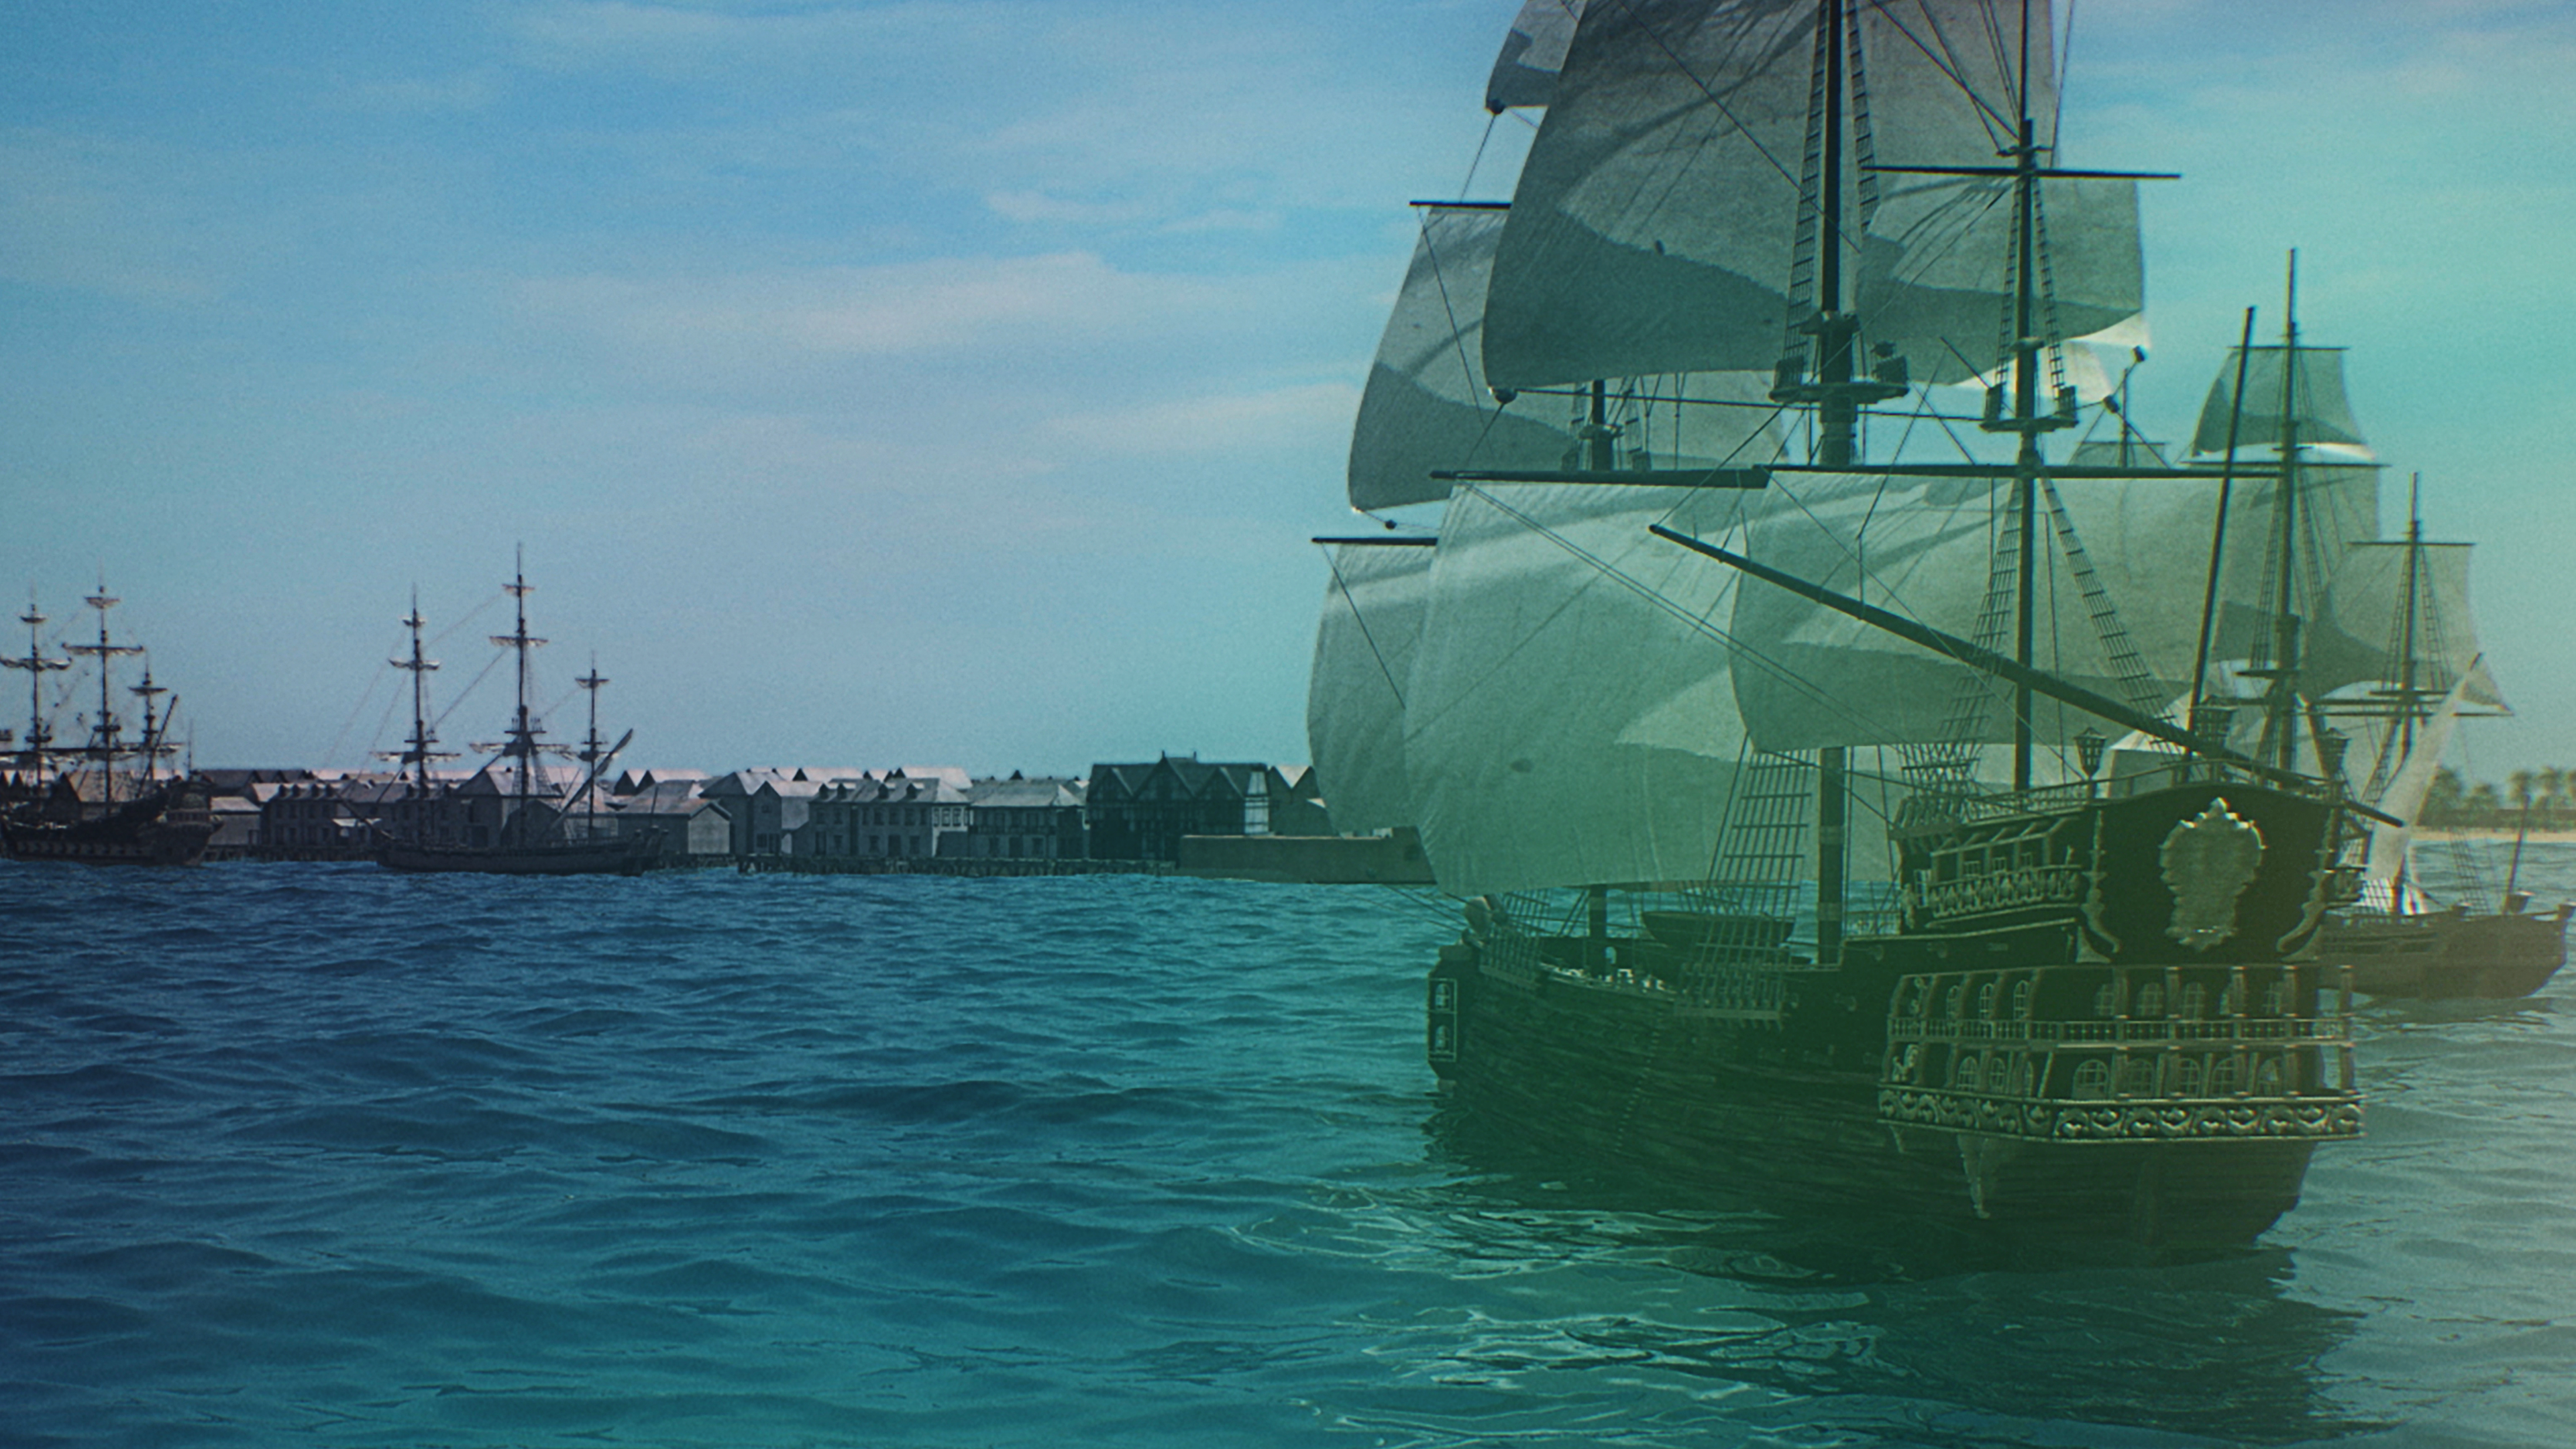 Trésors sous les mers : Port Royal ville pirate